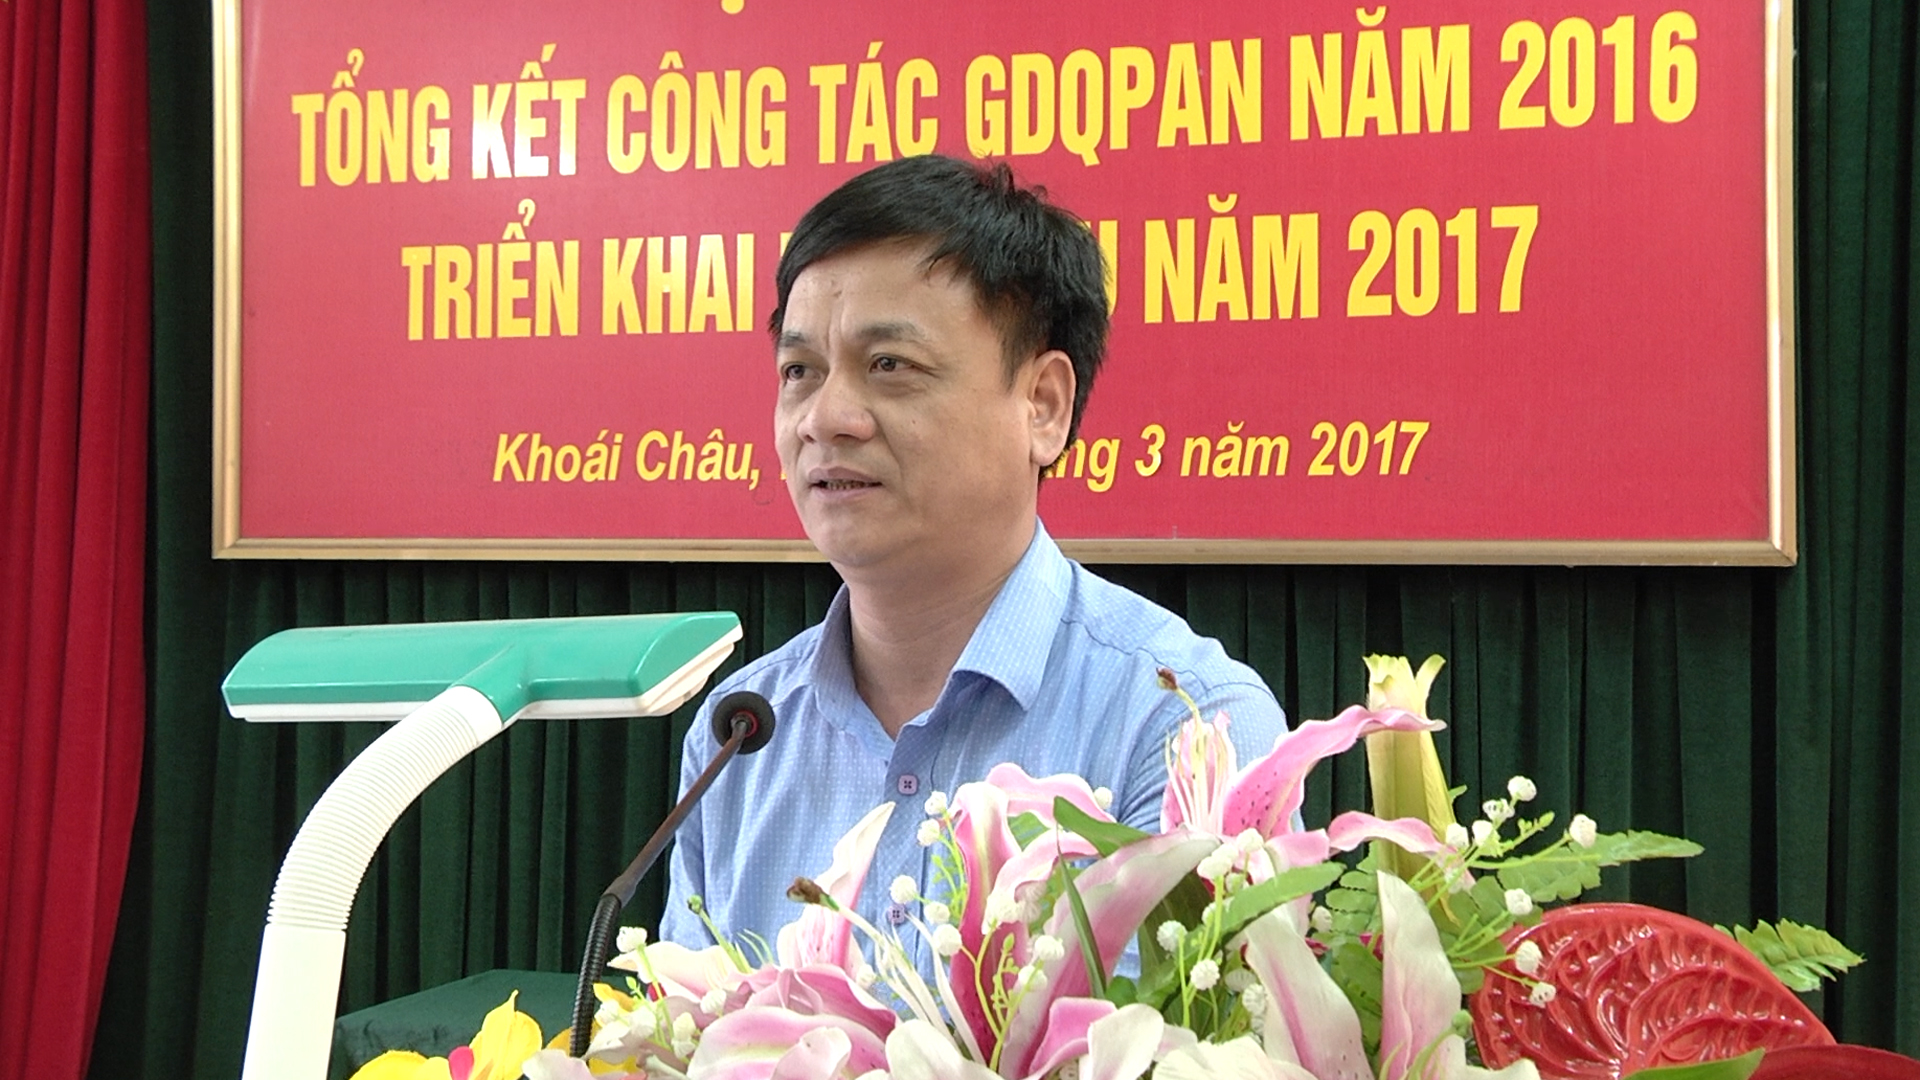 Đồng chí Lê Hải Nam - Phó Chủ tịch UBND huyện, Chủ tịch hội đồng GDQPAN huyện